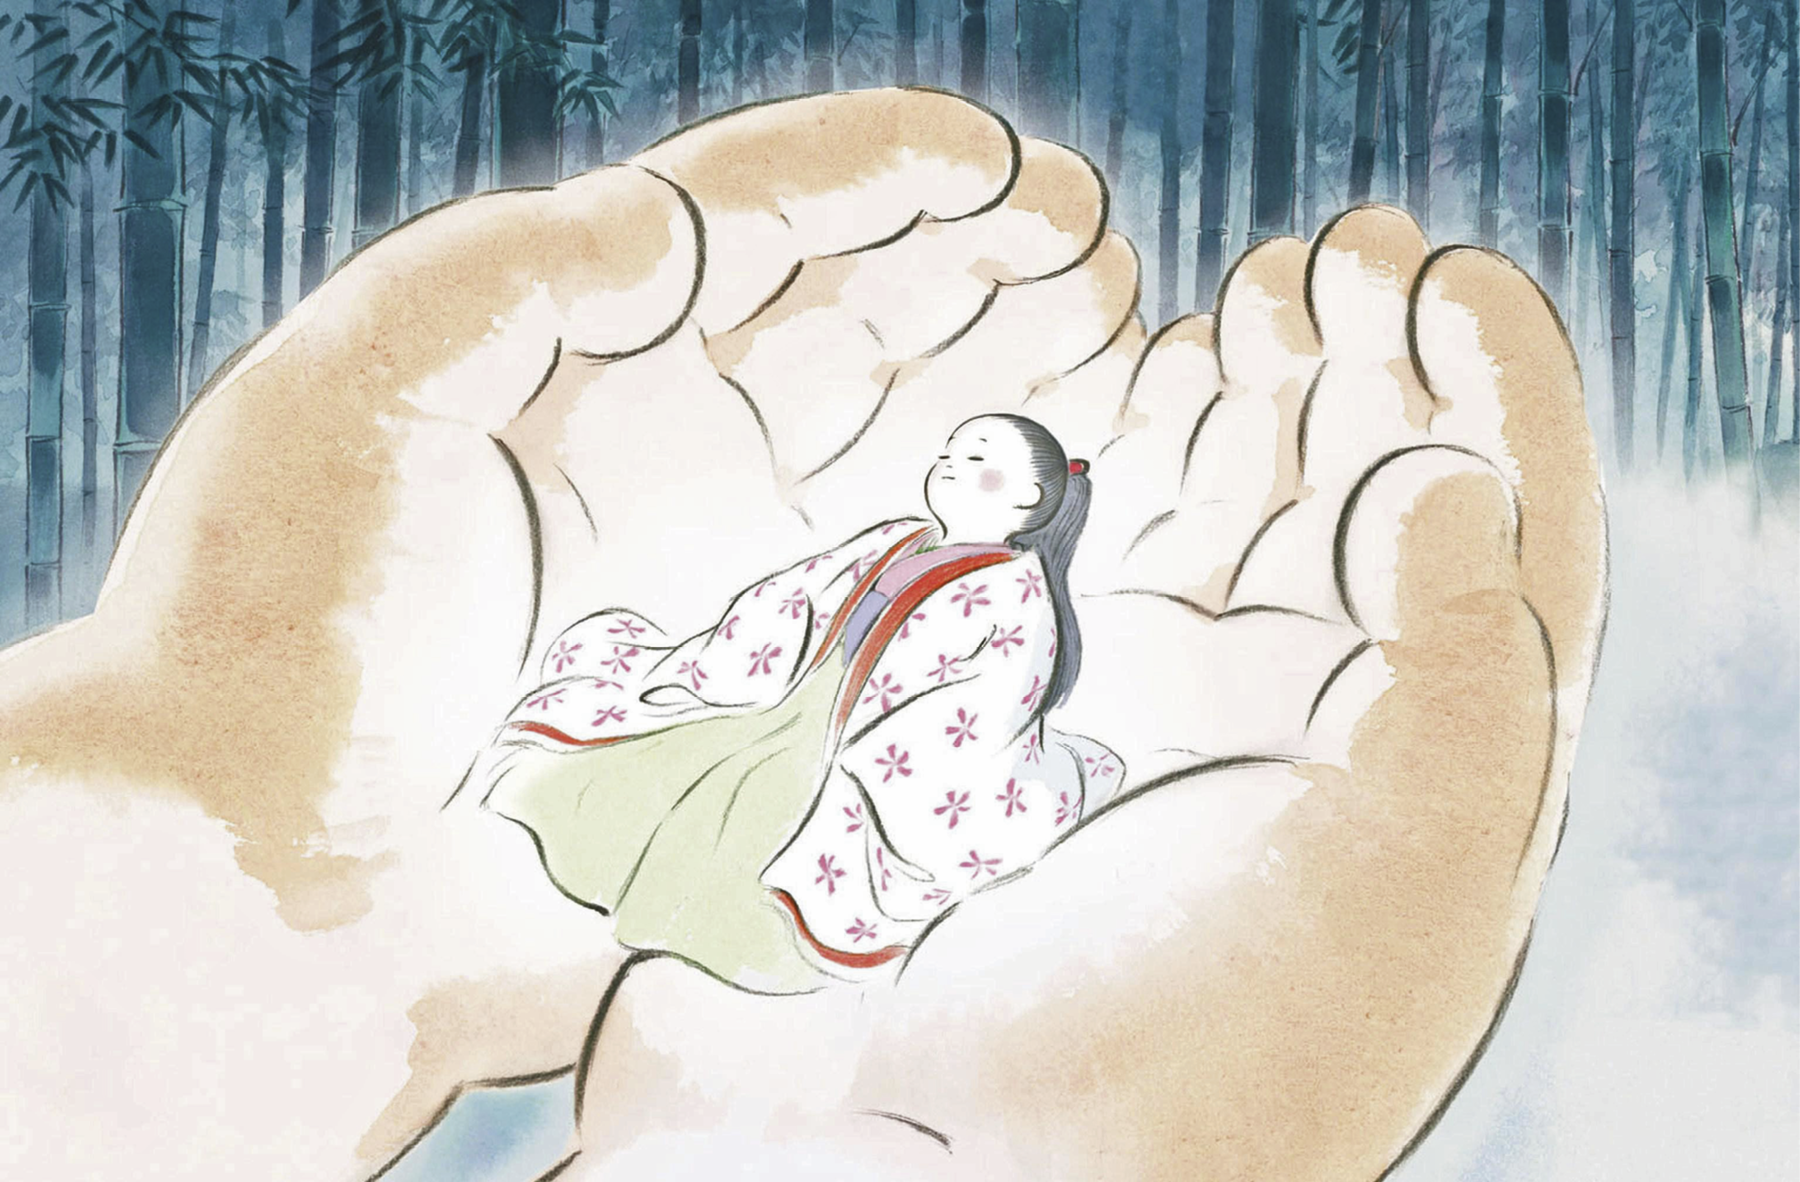 Ilustração. Uma menina vestindo um quimono branco florido de bordas vermelhas sobre outro traje longo verde-água de gola rosa e com uma faixa lilás em torno da cintura. Ela tem a face muito alva, com a bochecha corada, tem longos cabelos pretos presos atrás da cabeça por uma presilha vermelha, e está de olhos fechados aconchegada nas duas mãos de uma pessoa, que parece iluminada pela personagem. Ao fundo, diversos caules de bambus.